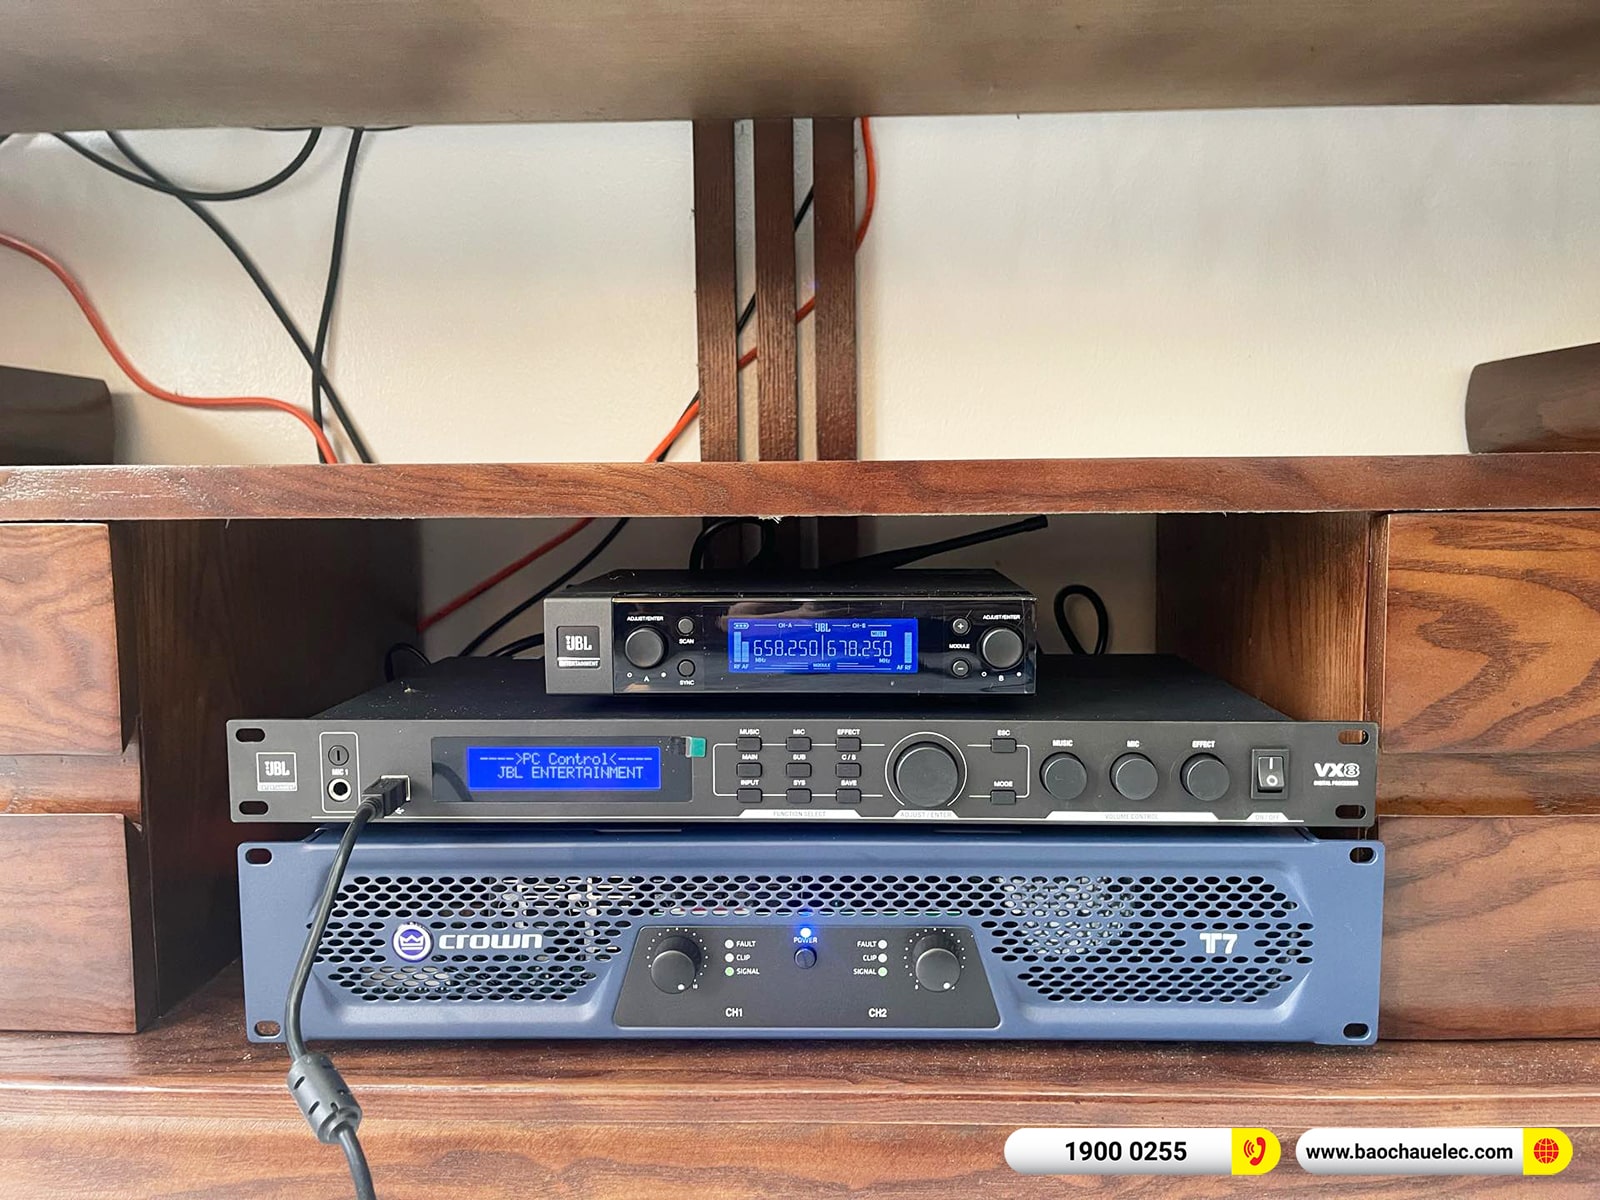 Lắp đặt dàn karaoke JBL hơn 68tr cho anh Mạnh tại Hải Dương (JBL MTS12, Crown T7, VX8, A120P, JBL VM300)